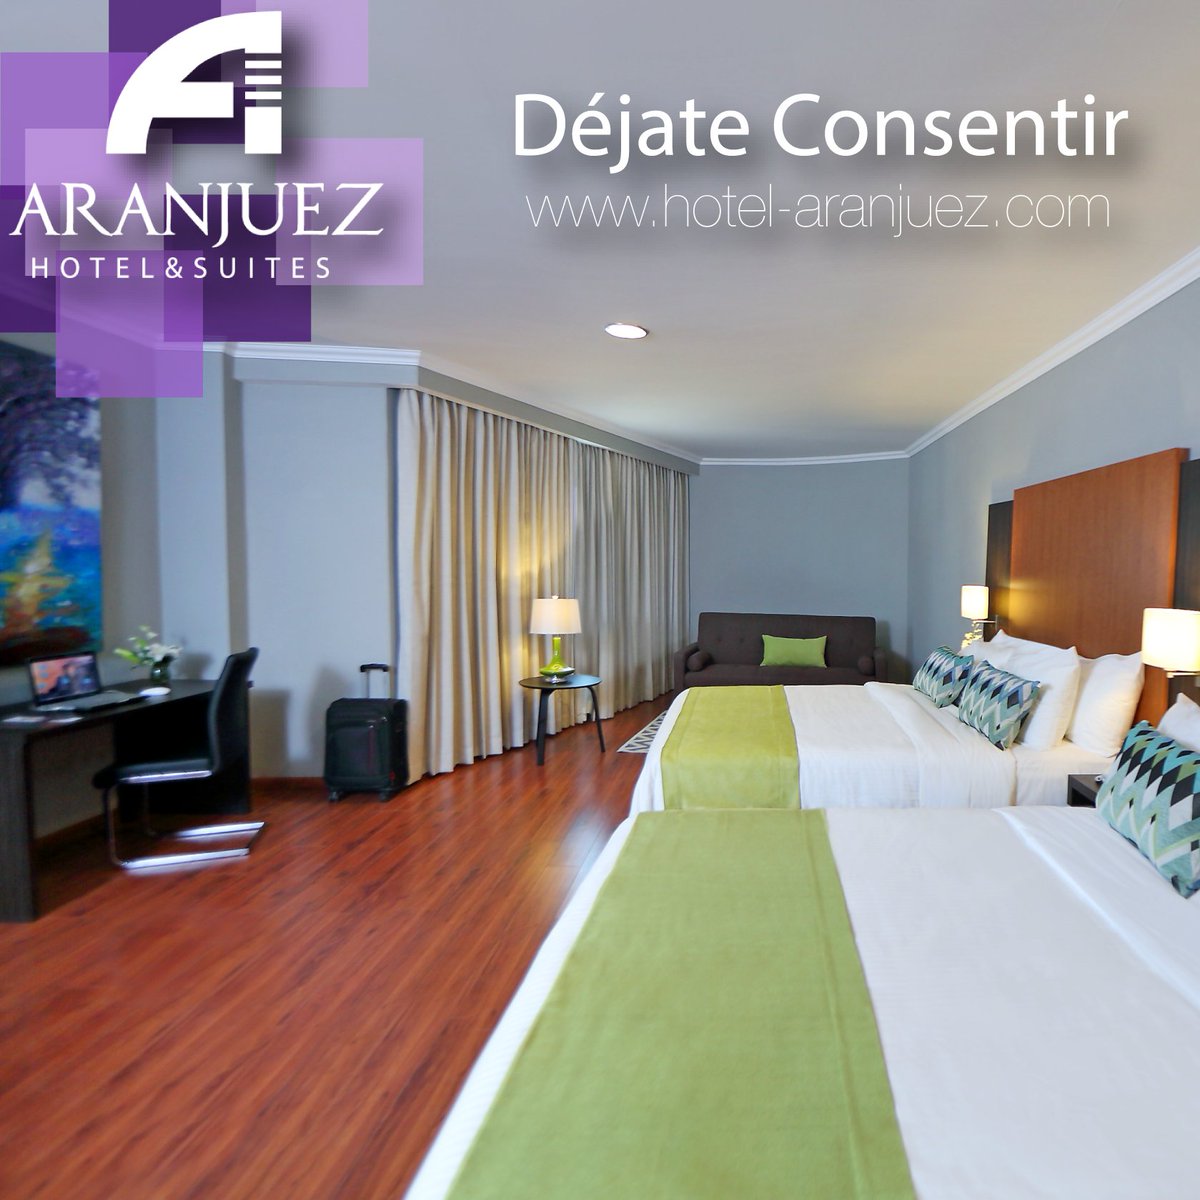 aranjuez_hotel tweet picture